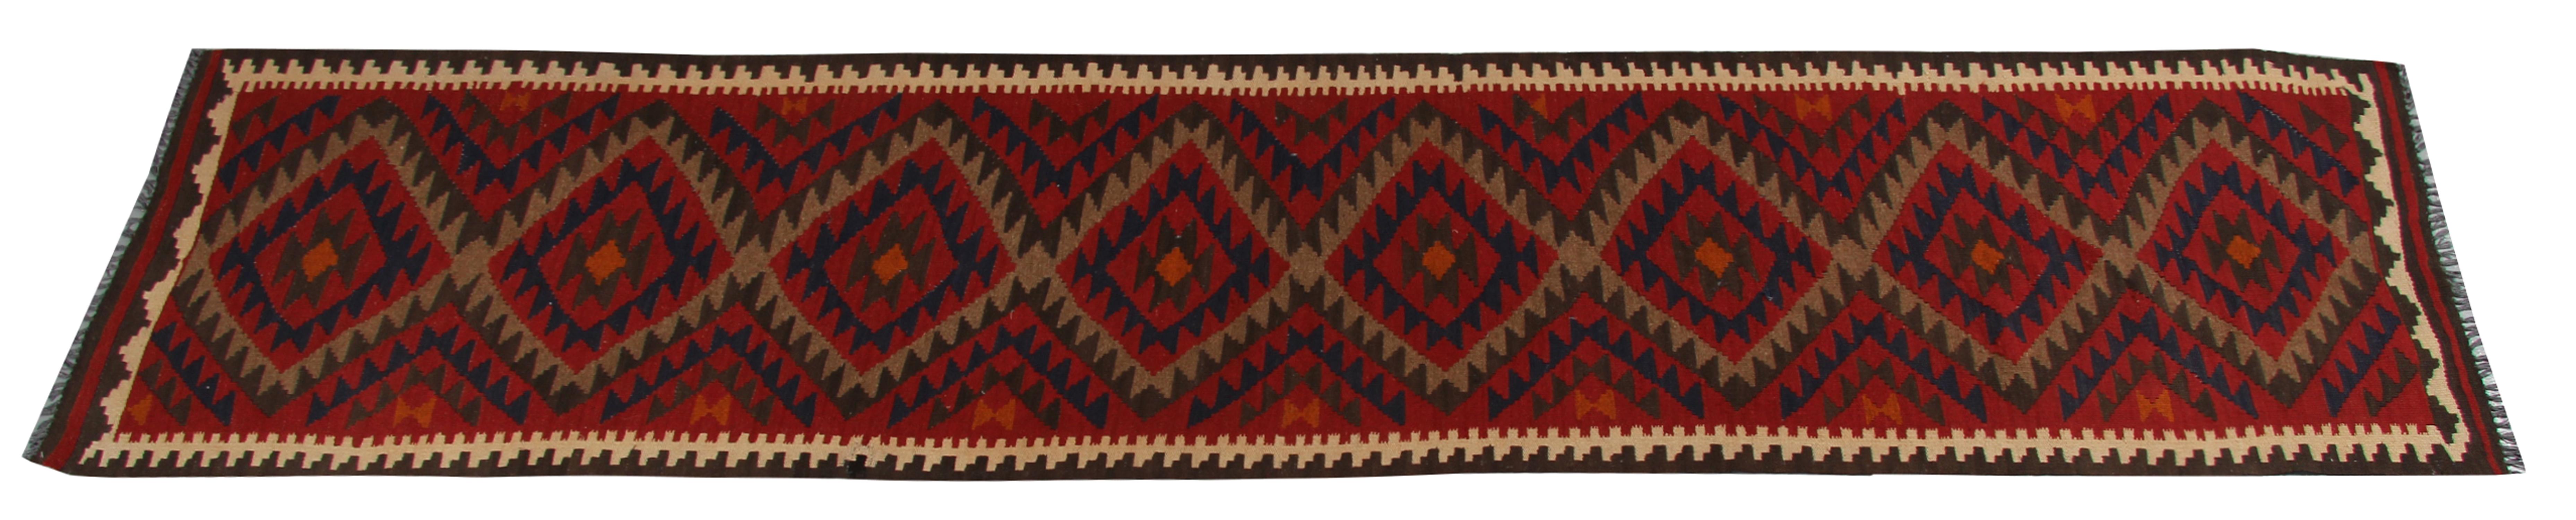 Afghan Vintage Kilims Runner Rug Geometric Handwoven Carpet Wool Kilim Rugs